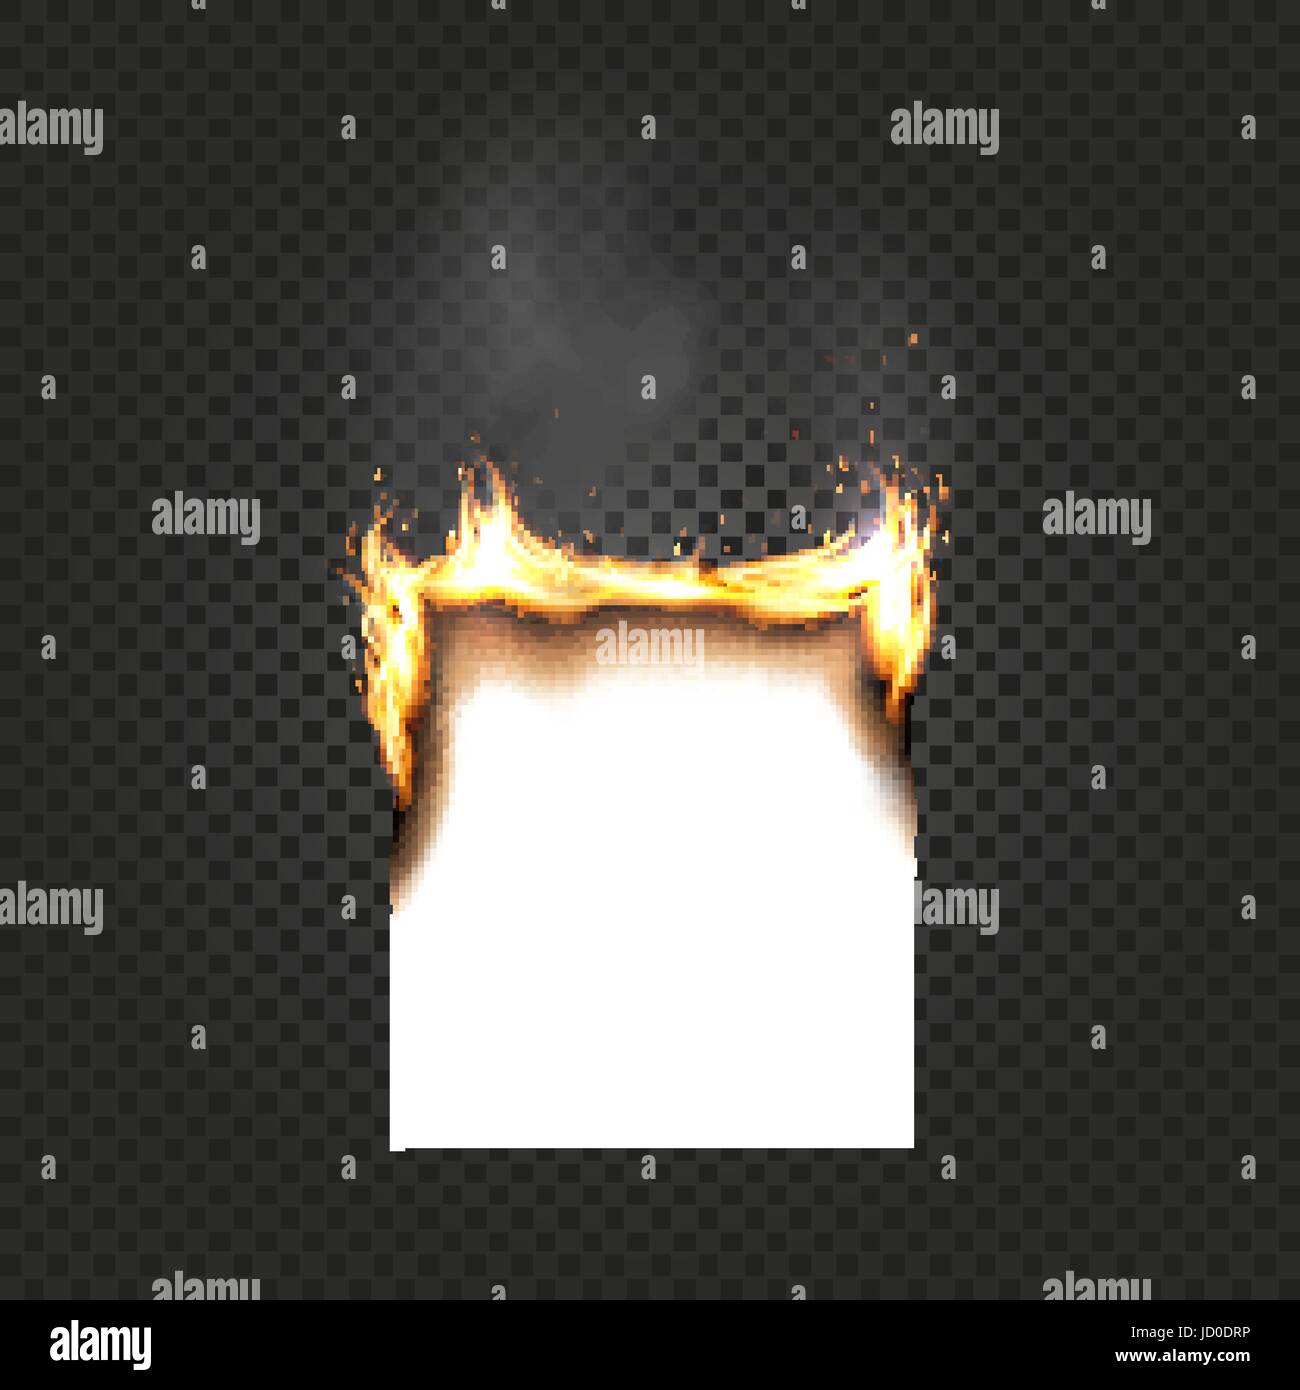 Brennen auf Schwarz karierter Hintergrund Papier Blatt A4 Kanten Nahaufnahme isoliert. Ein Raucher Blatt Papier mit Feuer-Vektor-illustration Stock Vektor